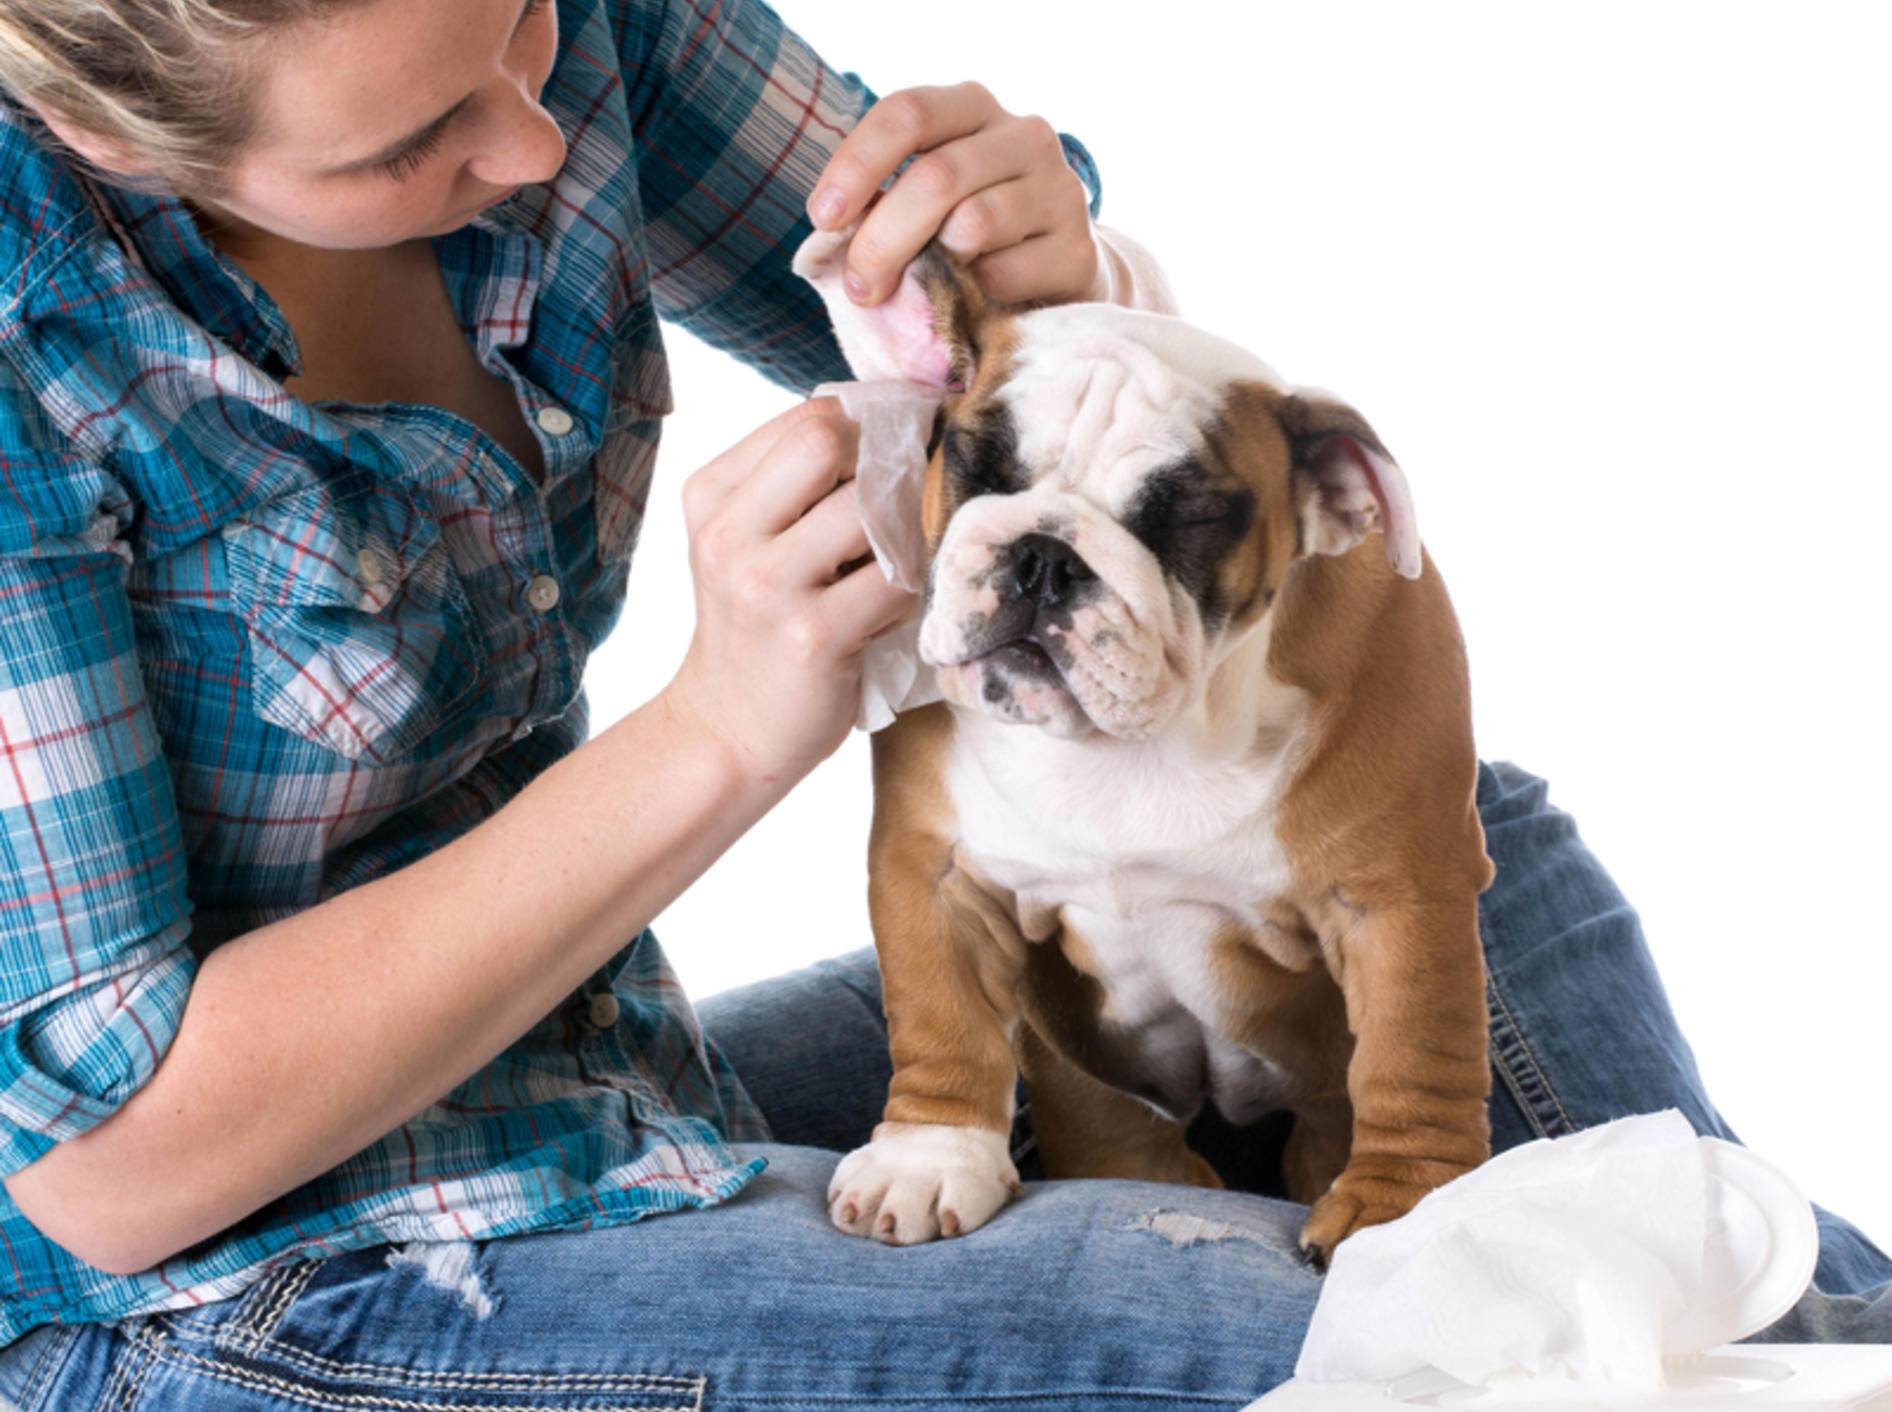 Vorsicht: Statt die Ohren Ihres Hundes selbst zu reinigen, sollten Sie lieber einen Tierarzt aufsuchen. – Bild: Shutterstock / WilleeCole Photography